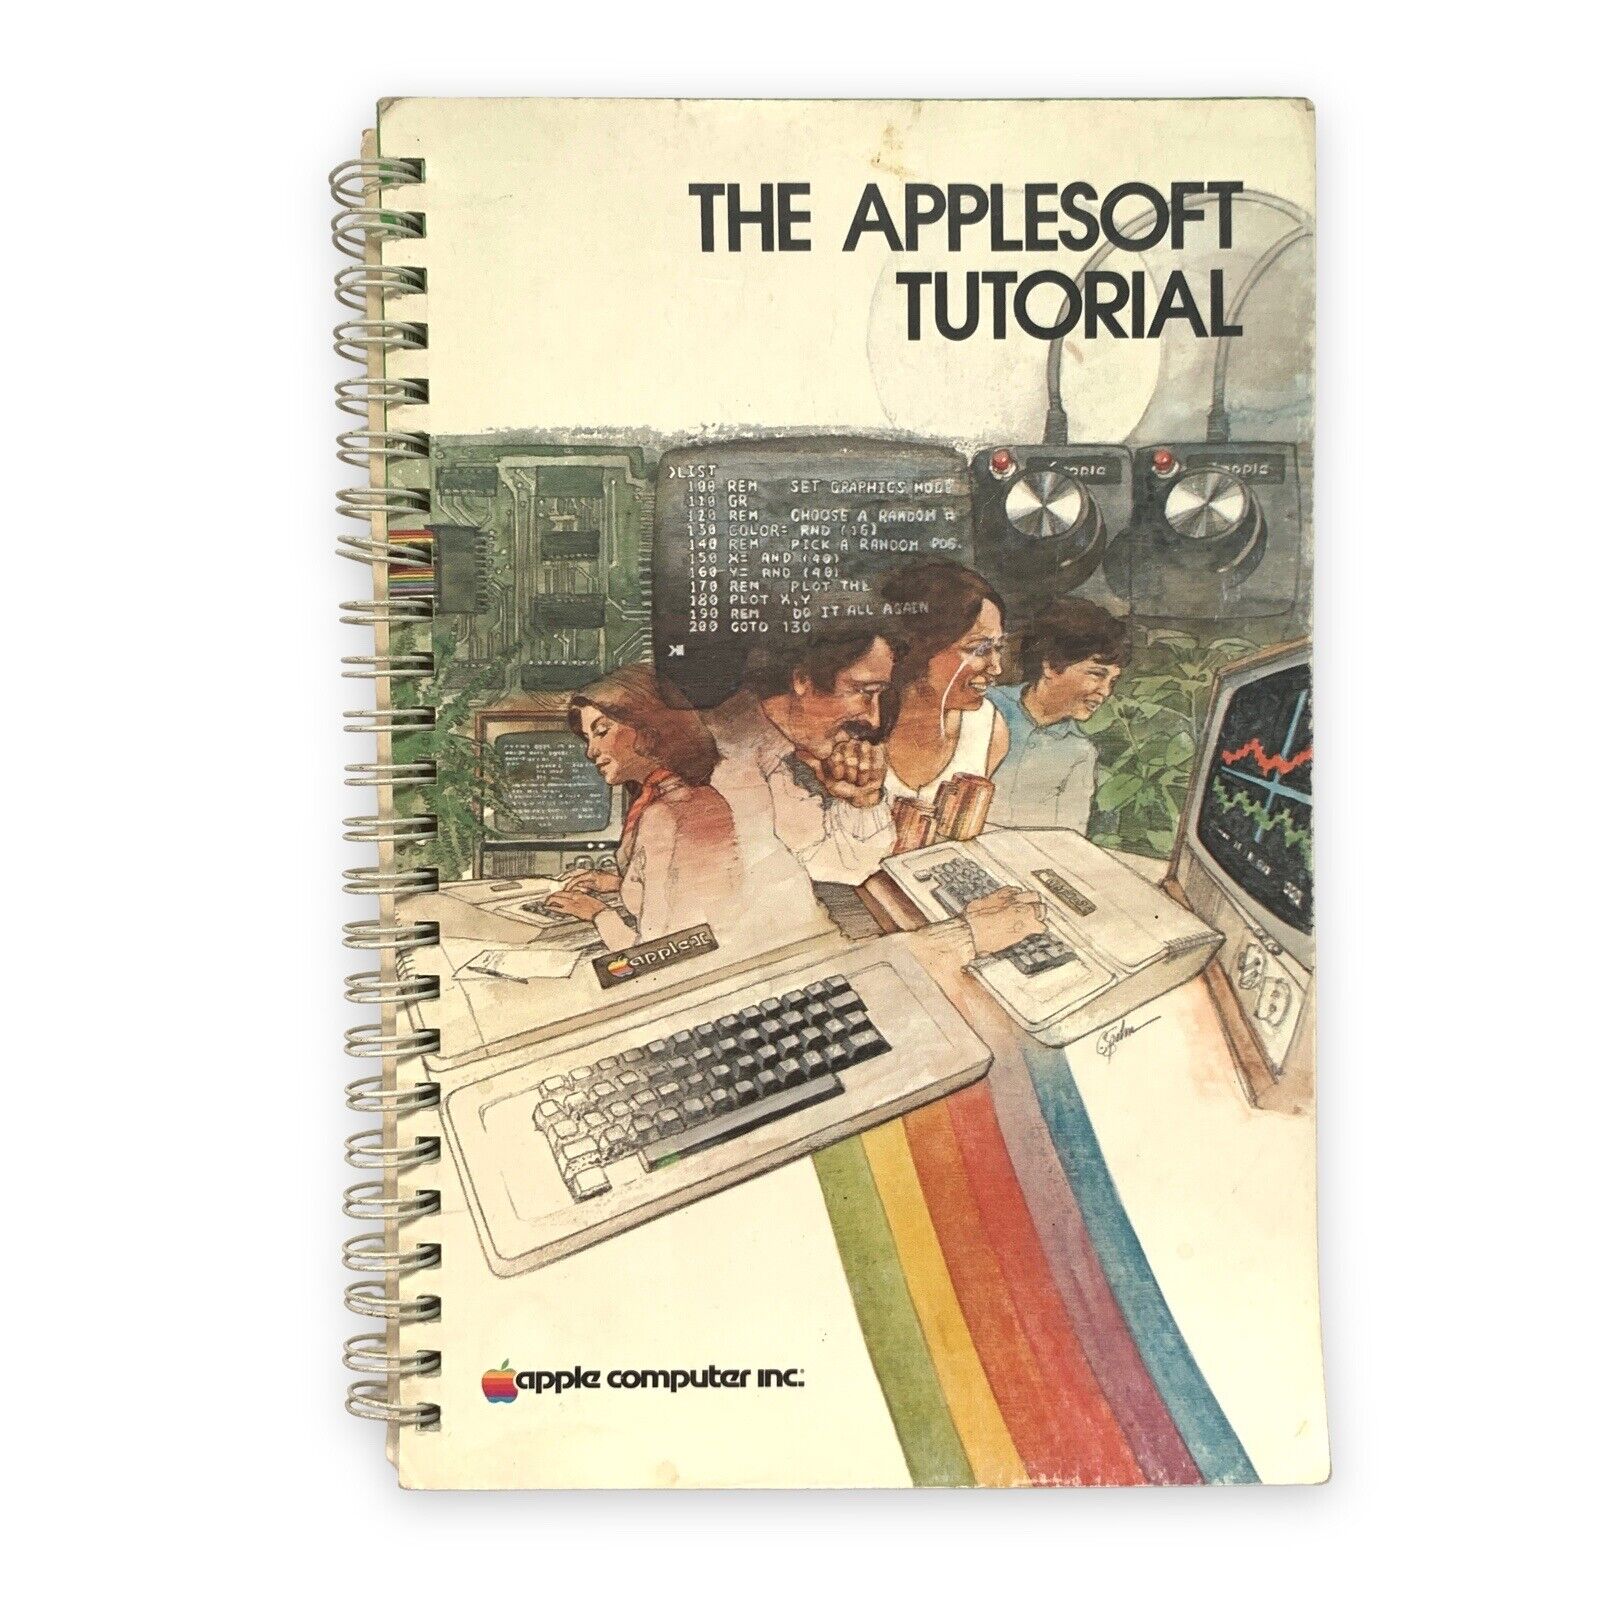 Apple The AppleSoft Tutorial User's Manual VTG 1981 